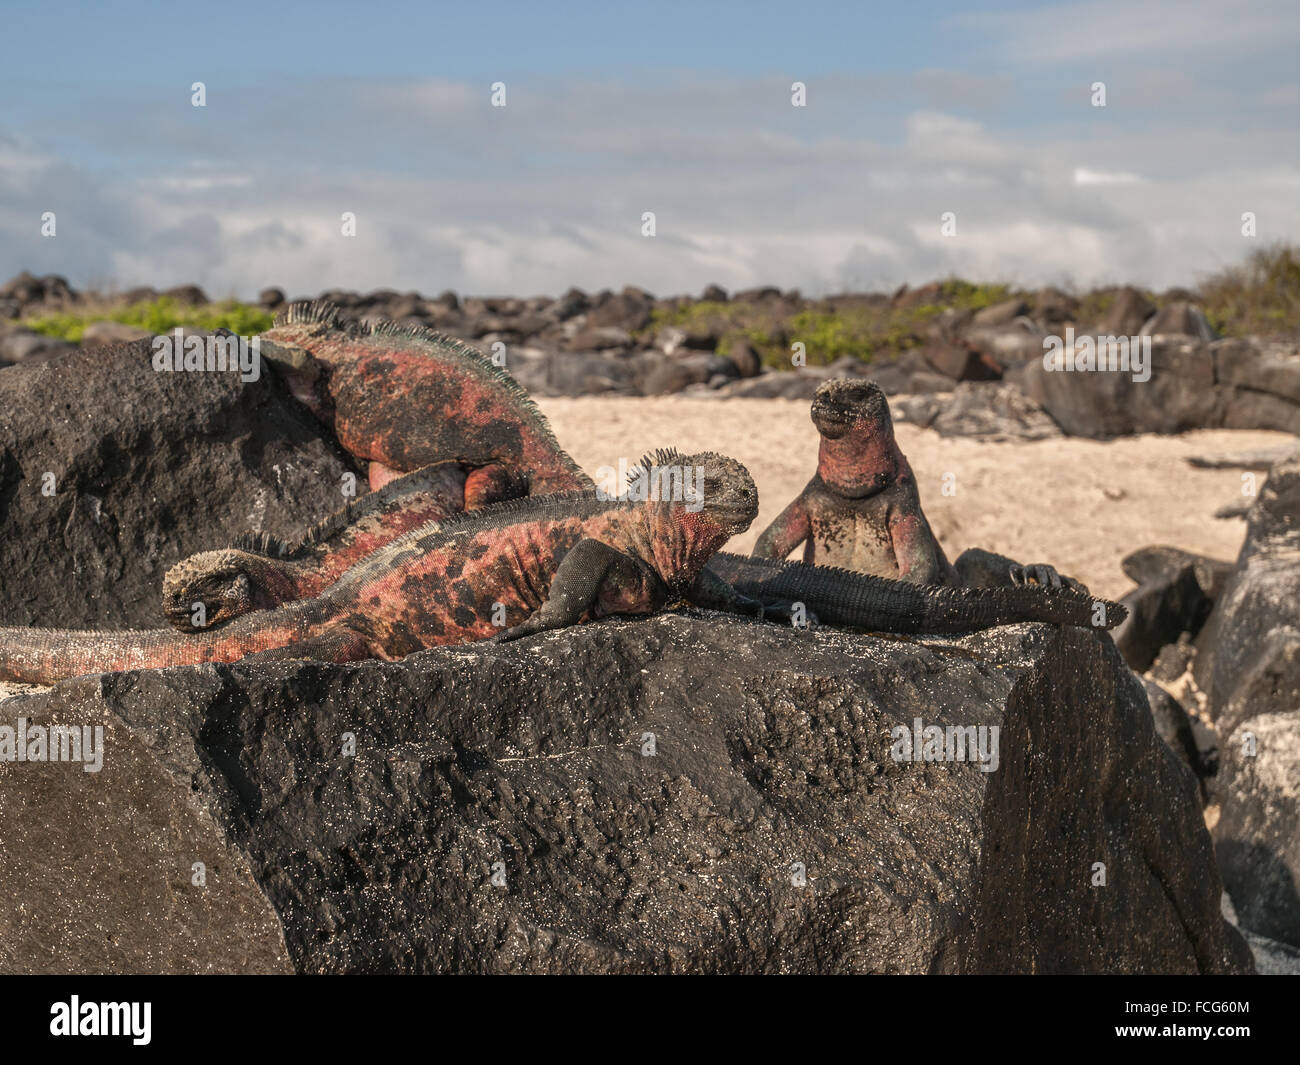 Groupe de quatre iguanes verts et rouges au sommet de roche de lave noire dans des îles Galapagos, en Équateur. Banque D'Images